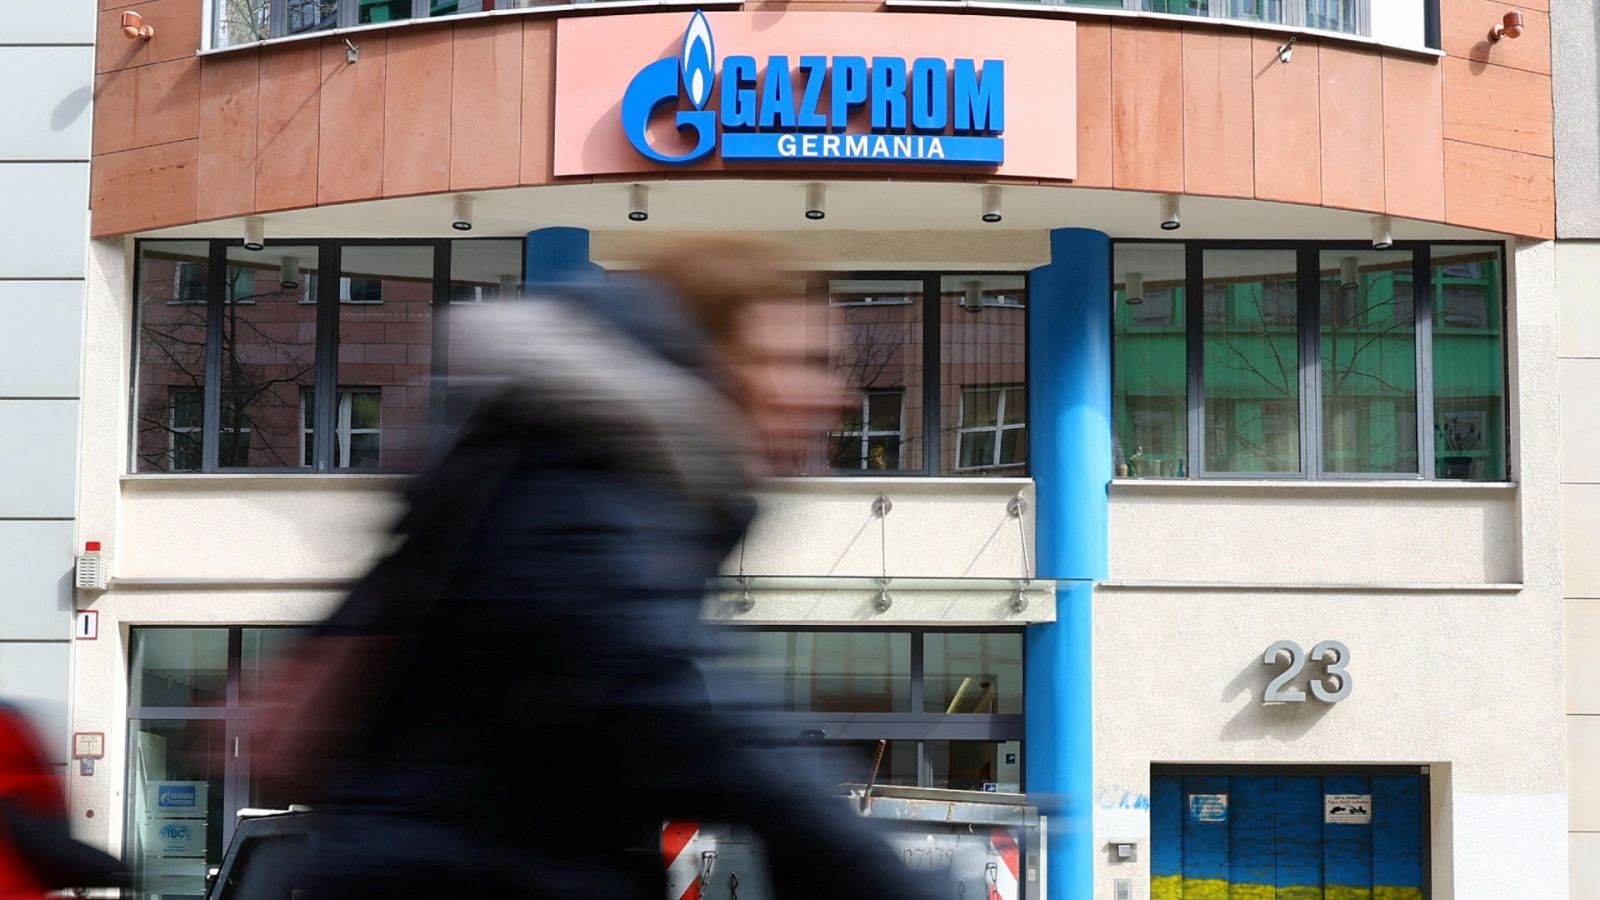 Imagen de archivo: sede de la filial de Gazprom en Alemania. REUTERS/Fabrizio Bensch